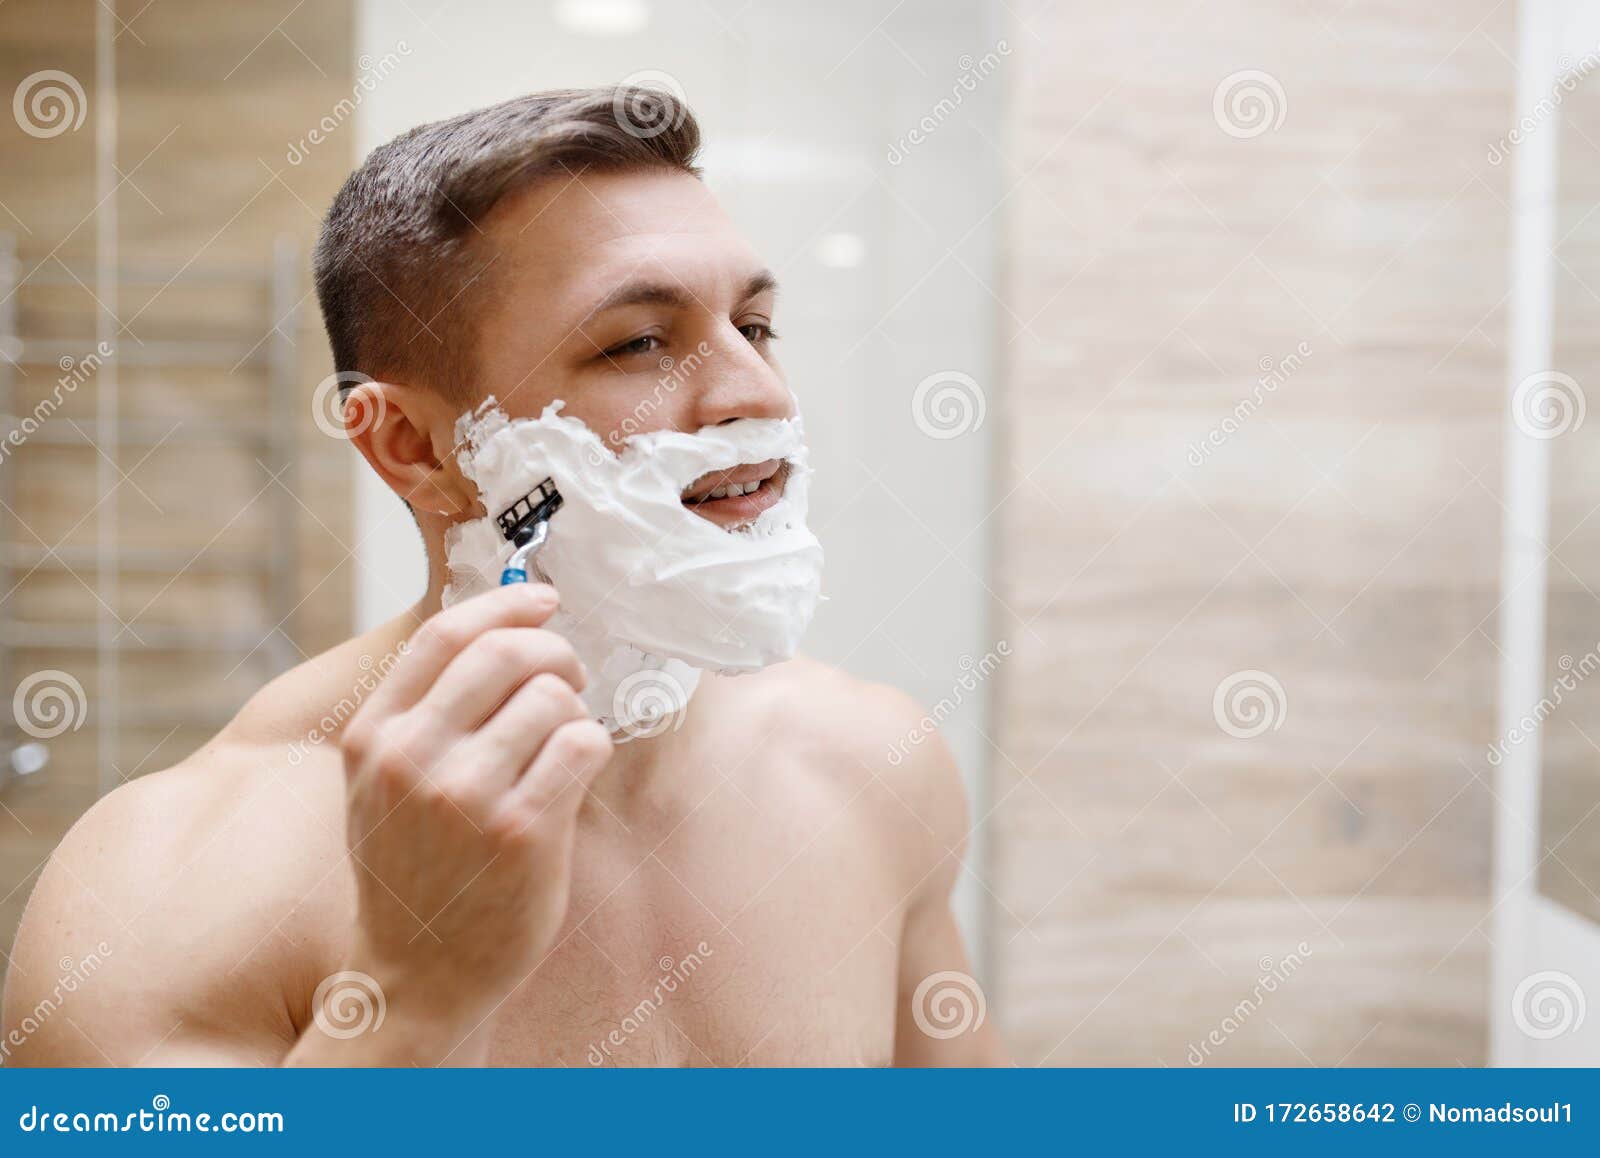 Мужчина бреет видео. Бритва для мужчин. Мужчина бреется. Мужчина бреется в ванной. Бритье парни.